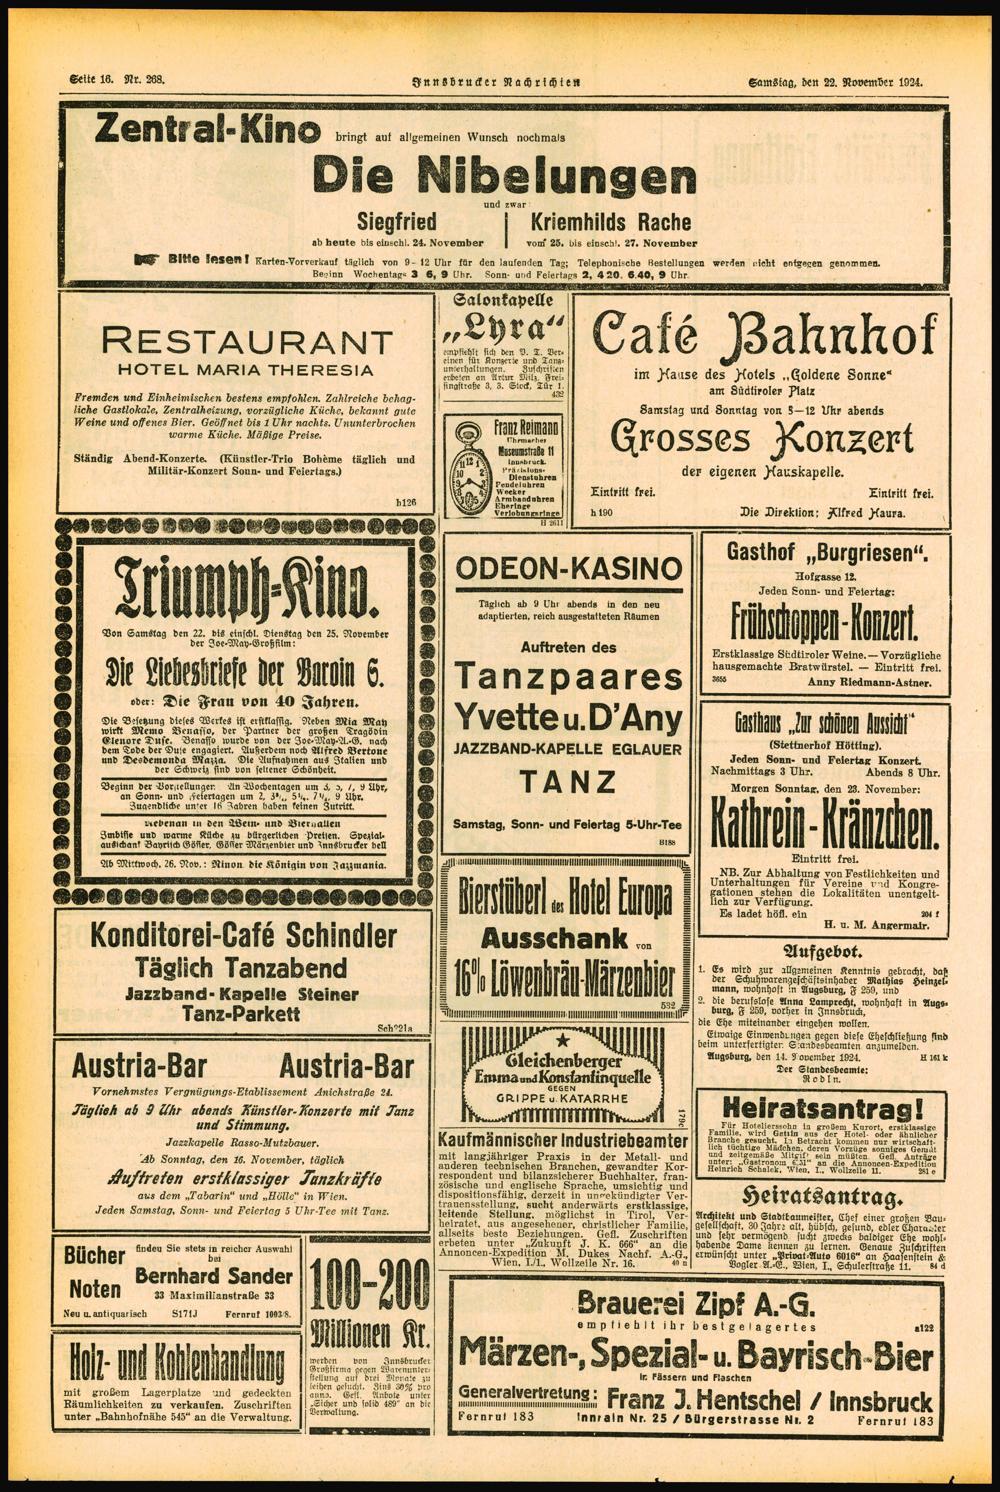 Seite 16. Nr. 268. Innsbrucker Nachrichten Samstag, den 22. November 1924. Zenital -Kino bringt auf allgemeinen Wunsch nochmals Die Nibelungen Siegfried und zwar Kriemhilds Rache ab heute bis eidschl.